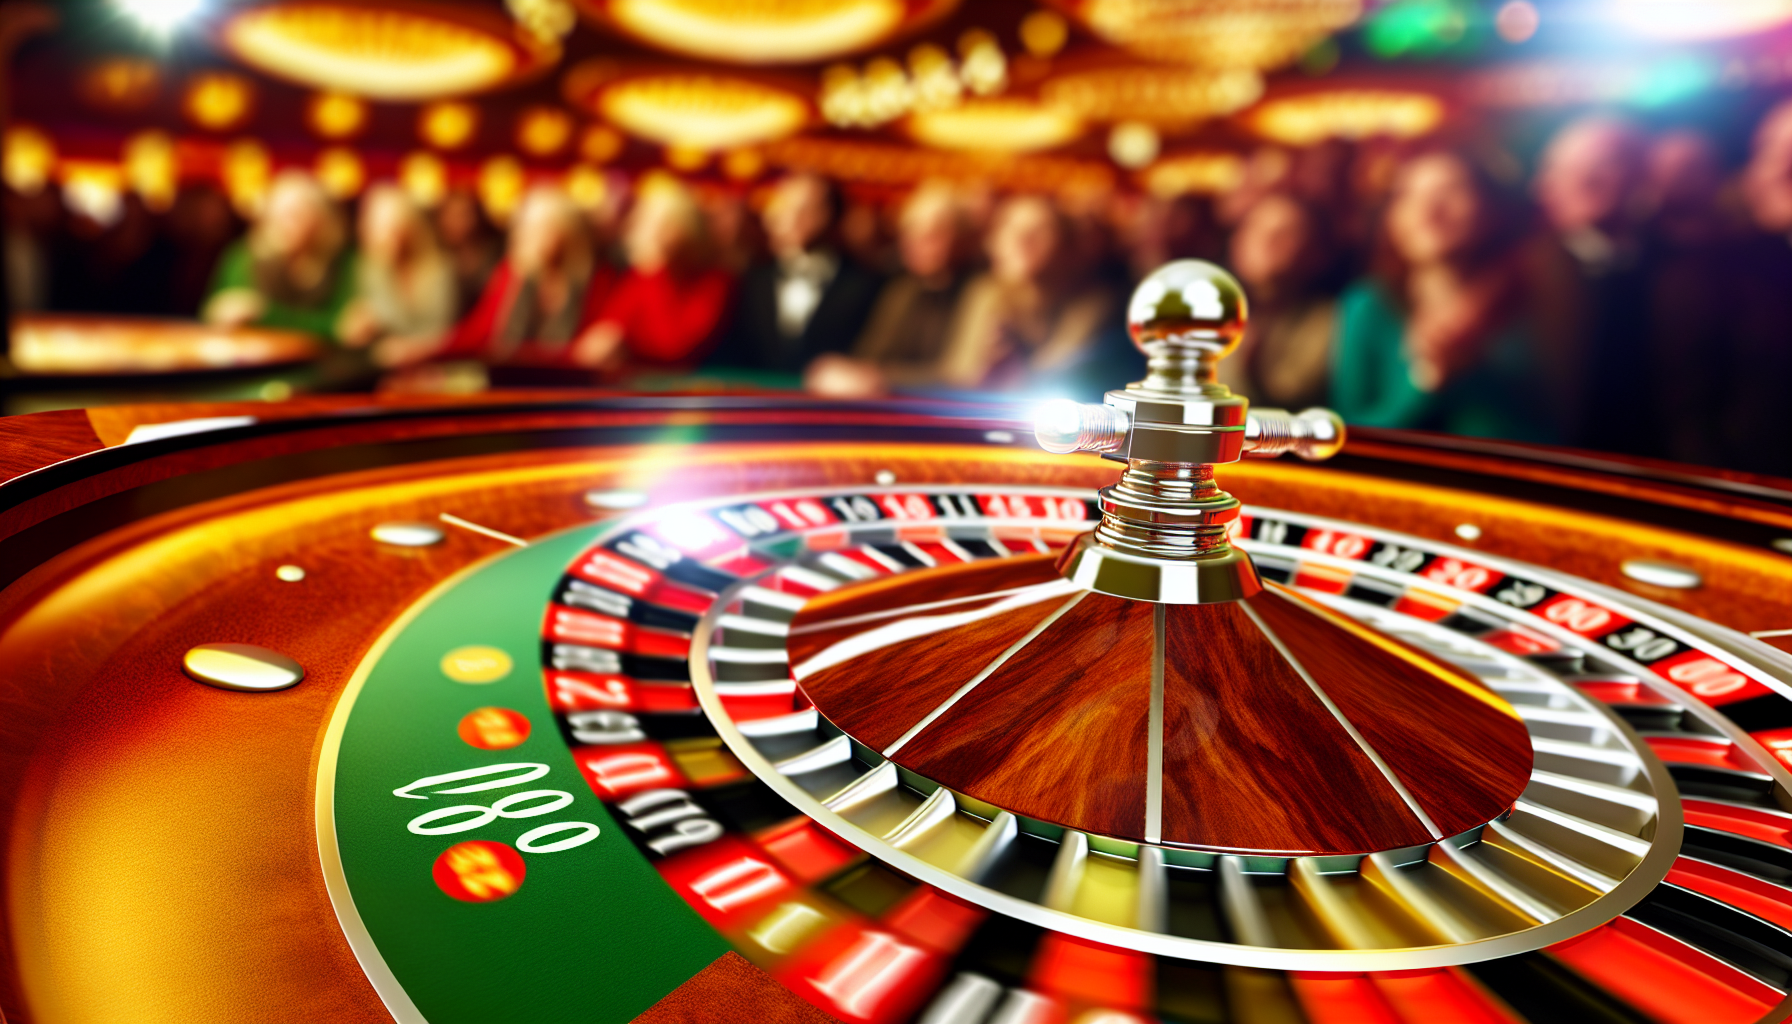 Ruleta de casino con el número 10 resaltado para usar el bono de 10 euros gratis sin depósito